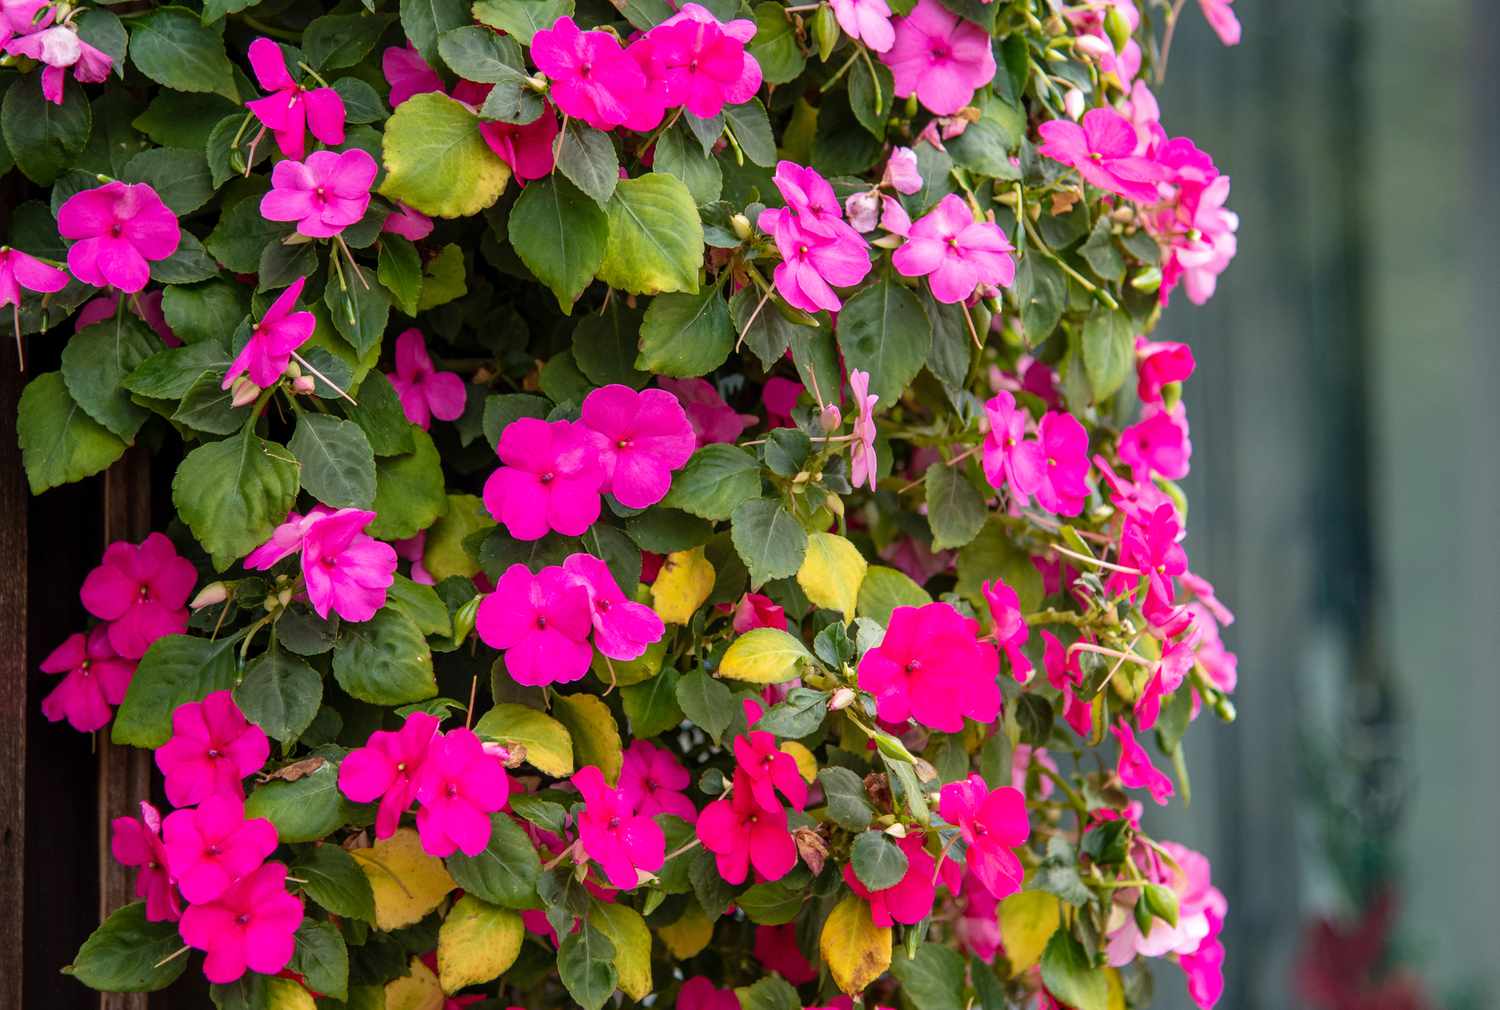 Impatiens planta trepadora en sombra con flores de color rosa brillante